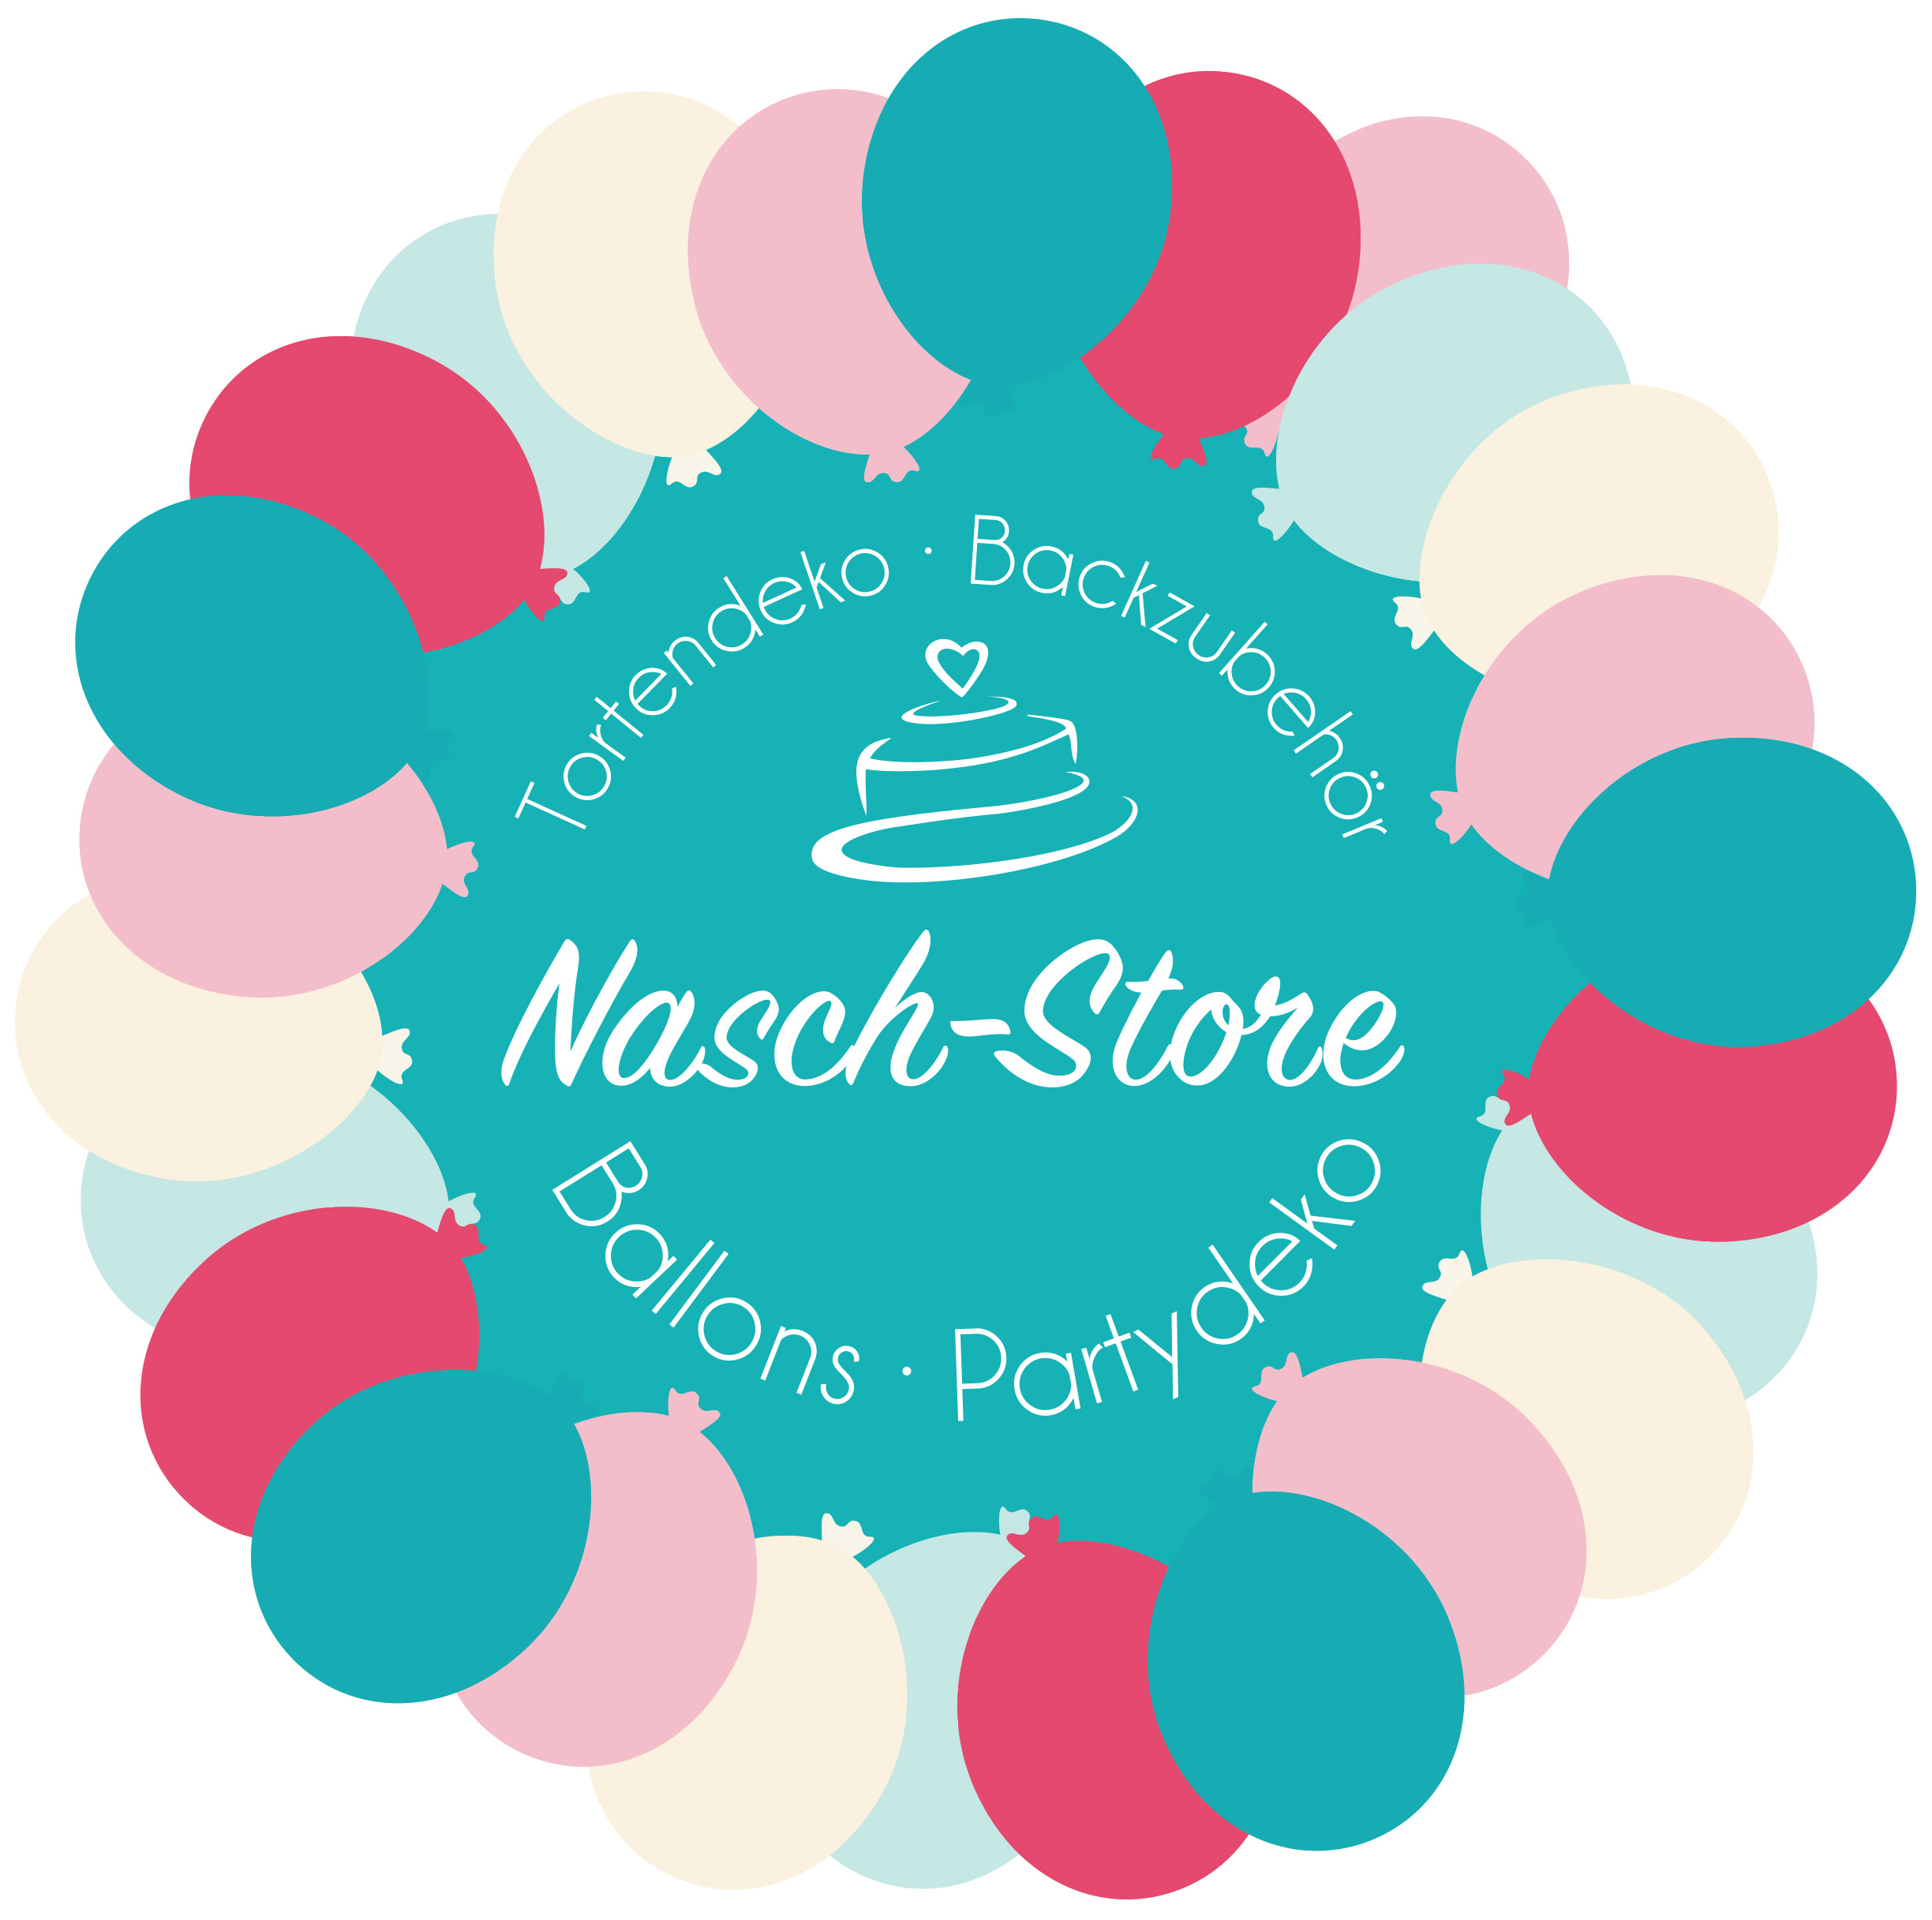 Nasch-Store